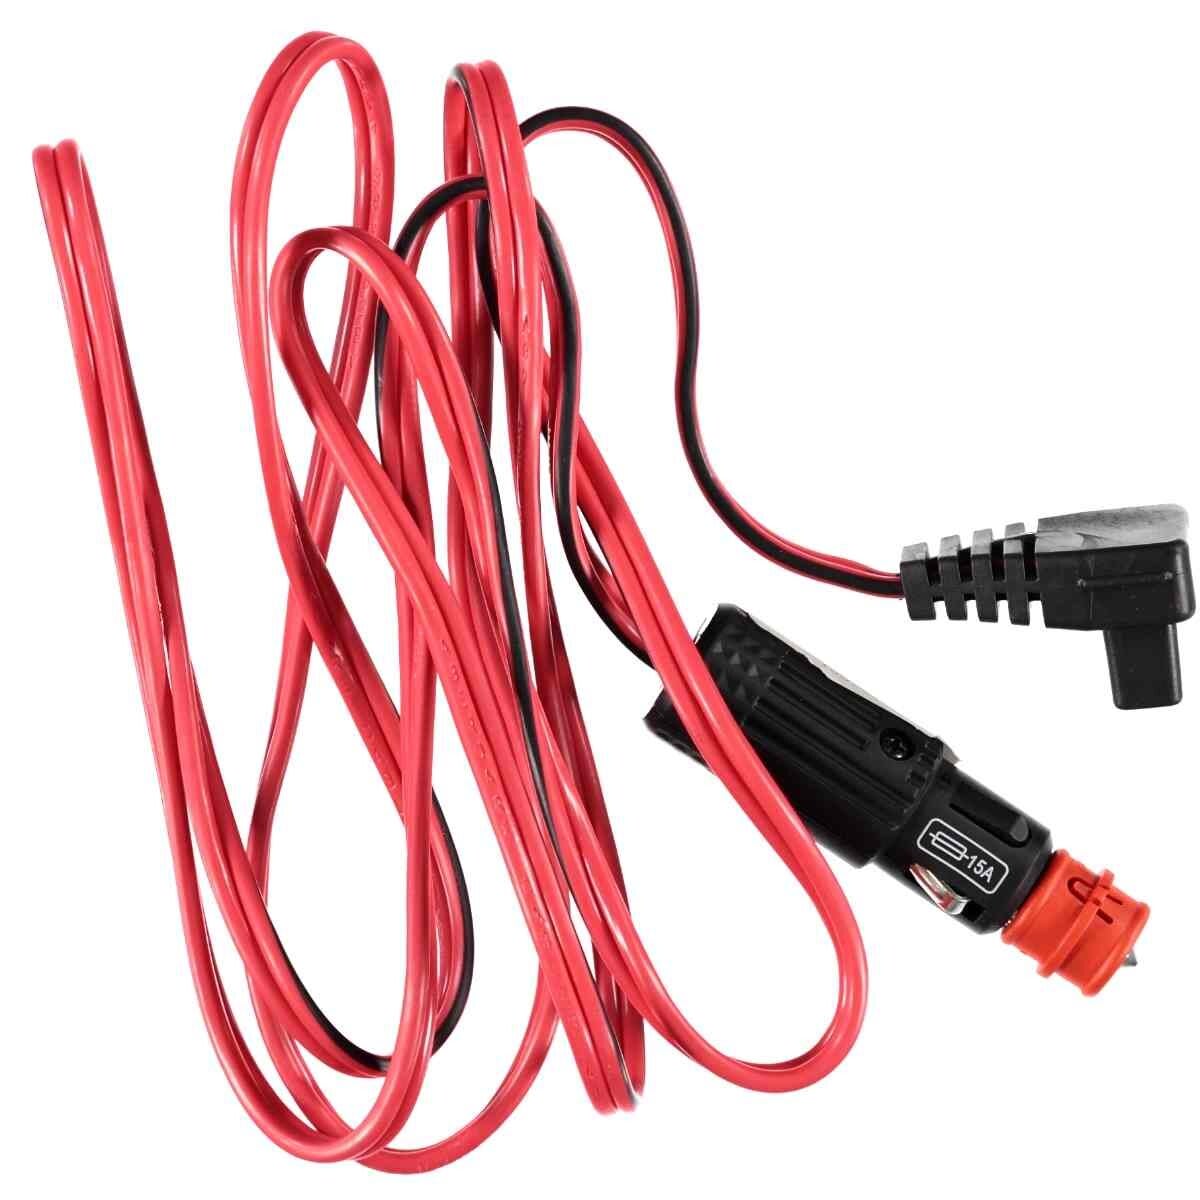 Indel B / Waeco 12V 2m Cable, 1003045